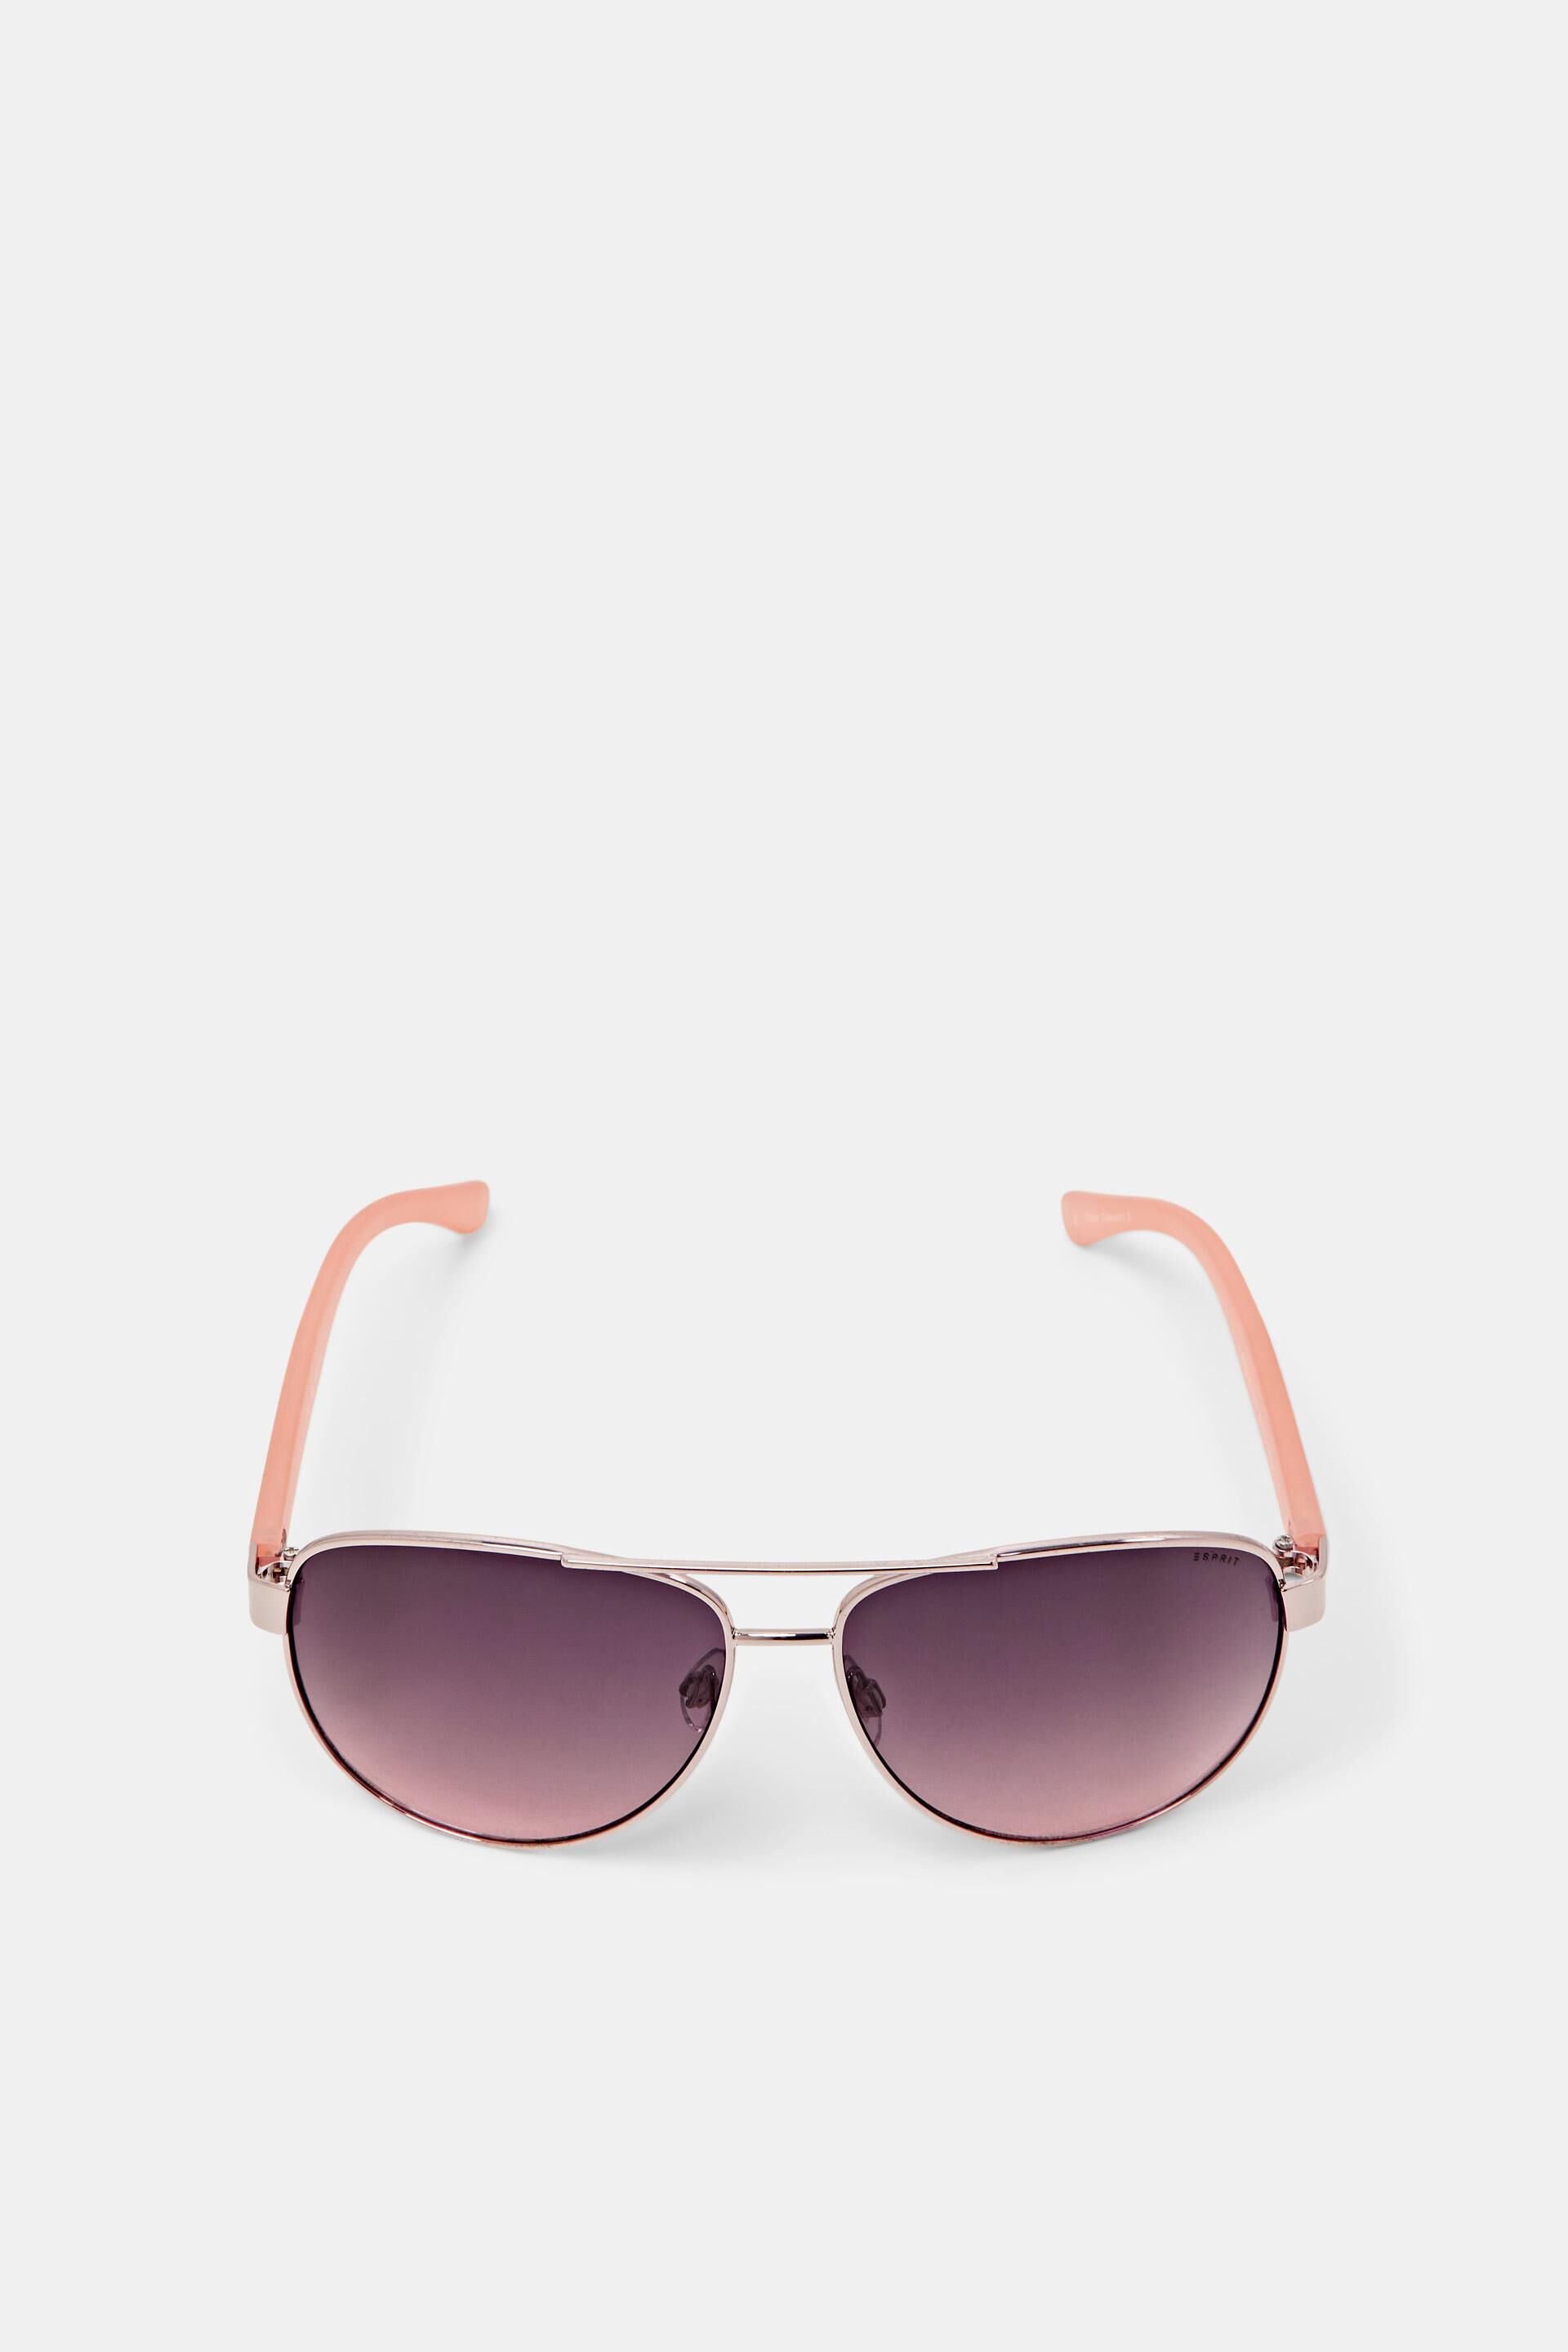 Esprit sunglasses aviator-style Unisex